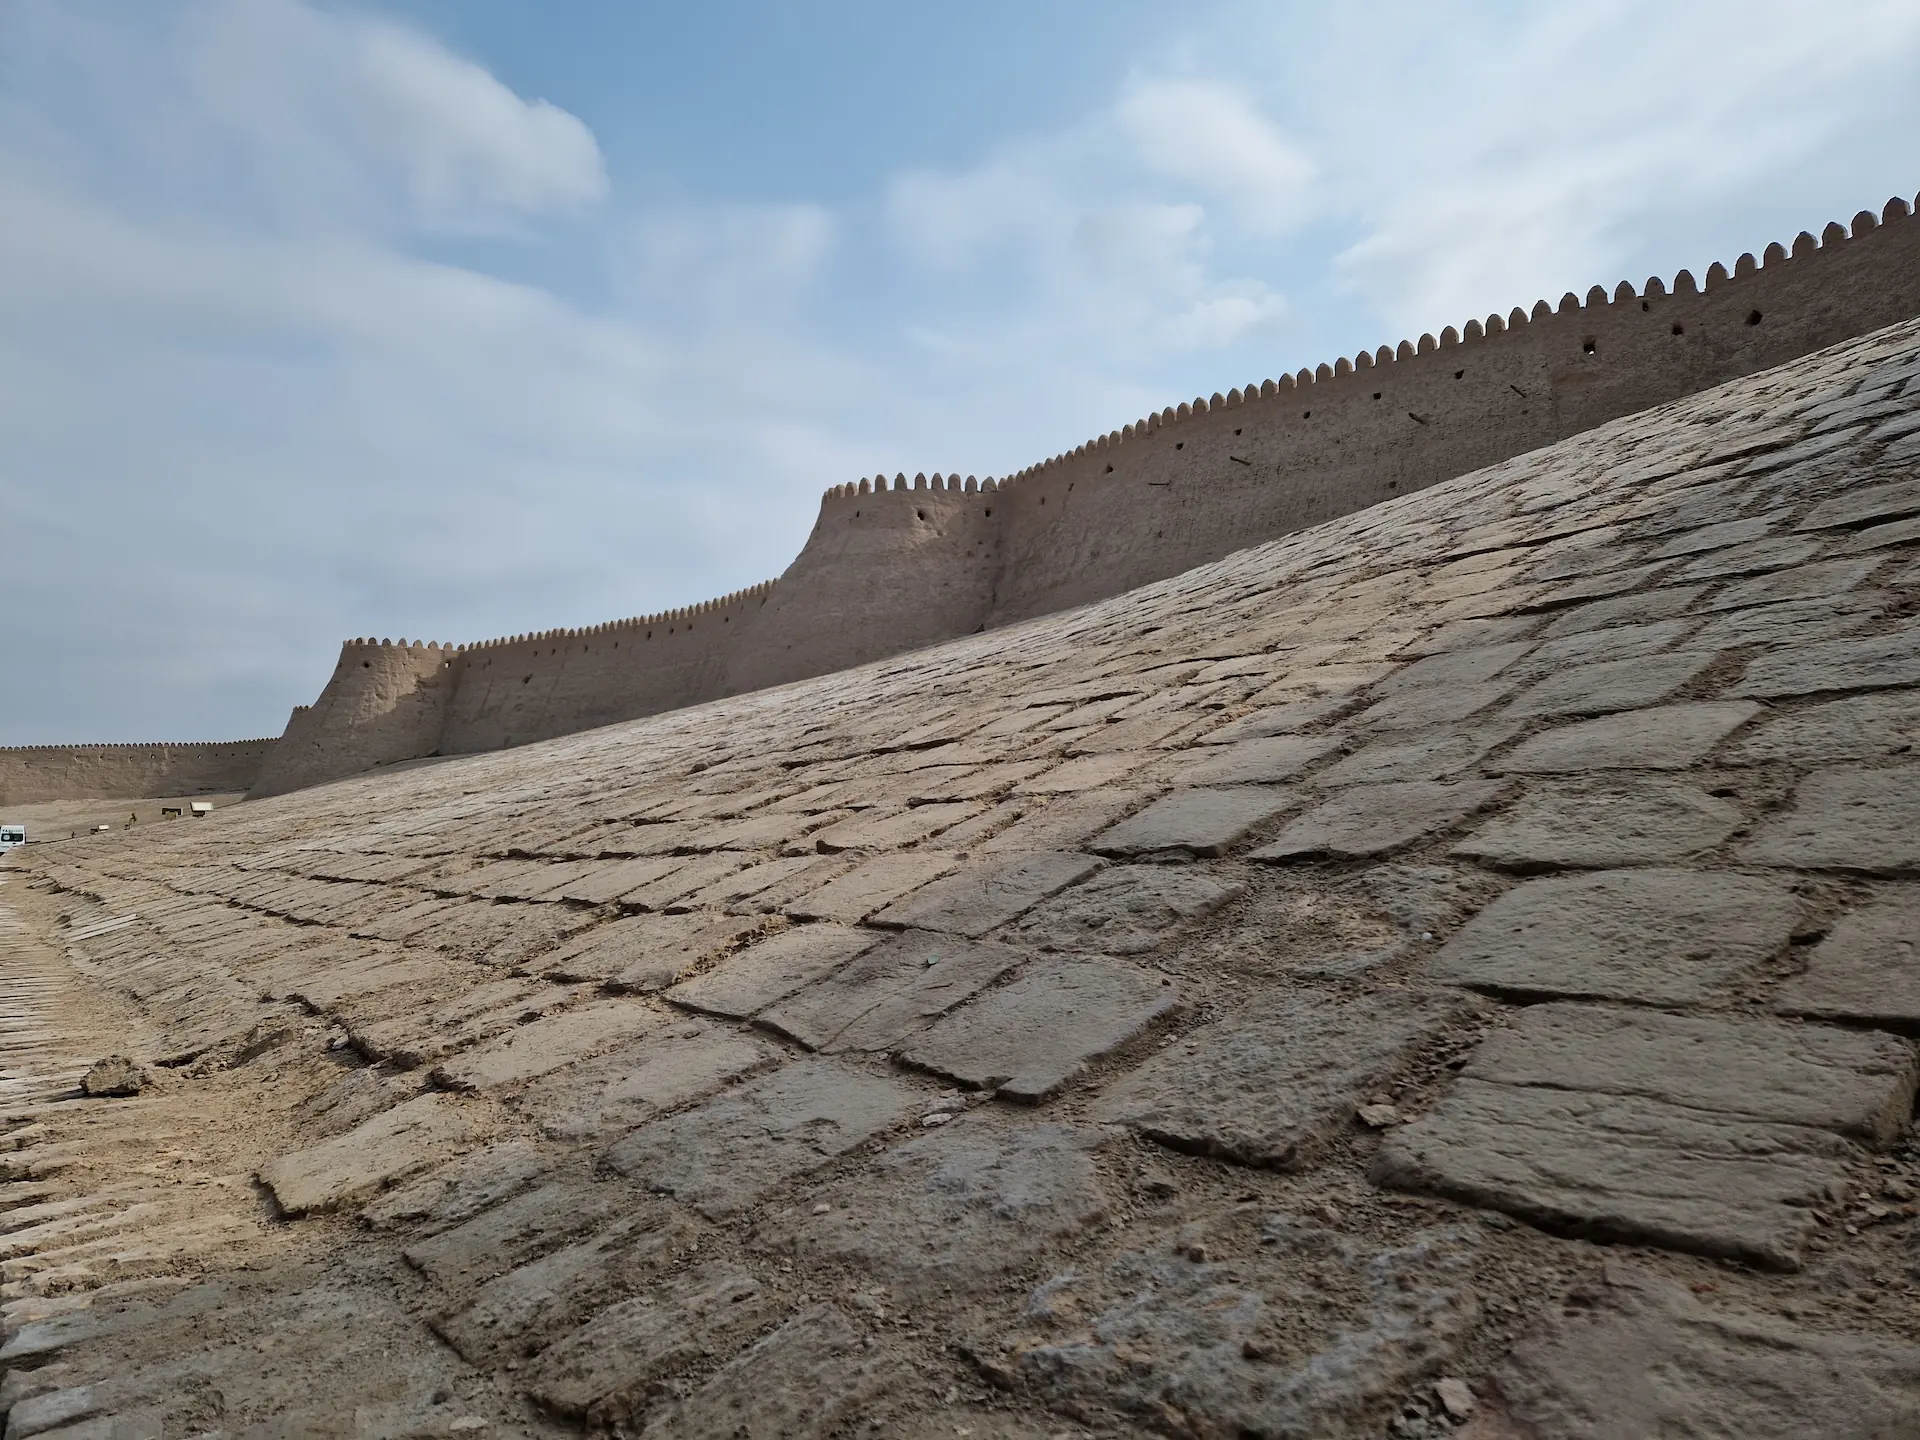 Mur de la forteresse de Khiva vu de l'extérieur. Il est en pierre, dentelé et descend en pente